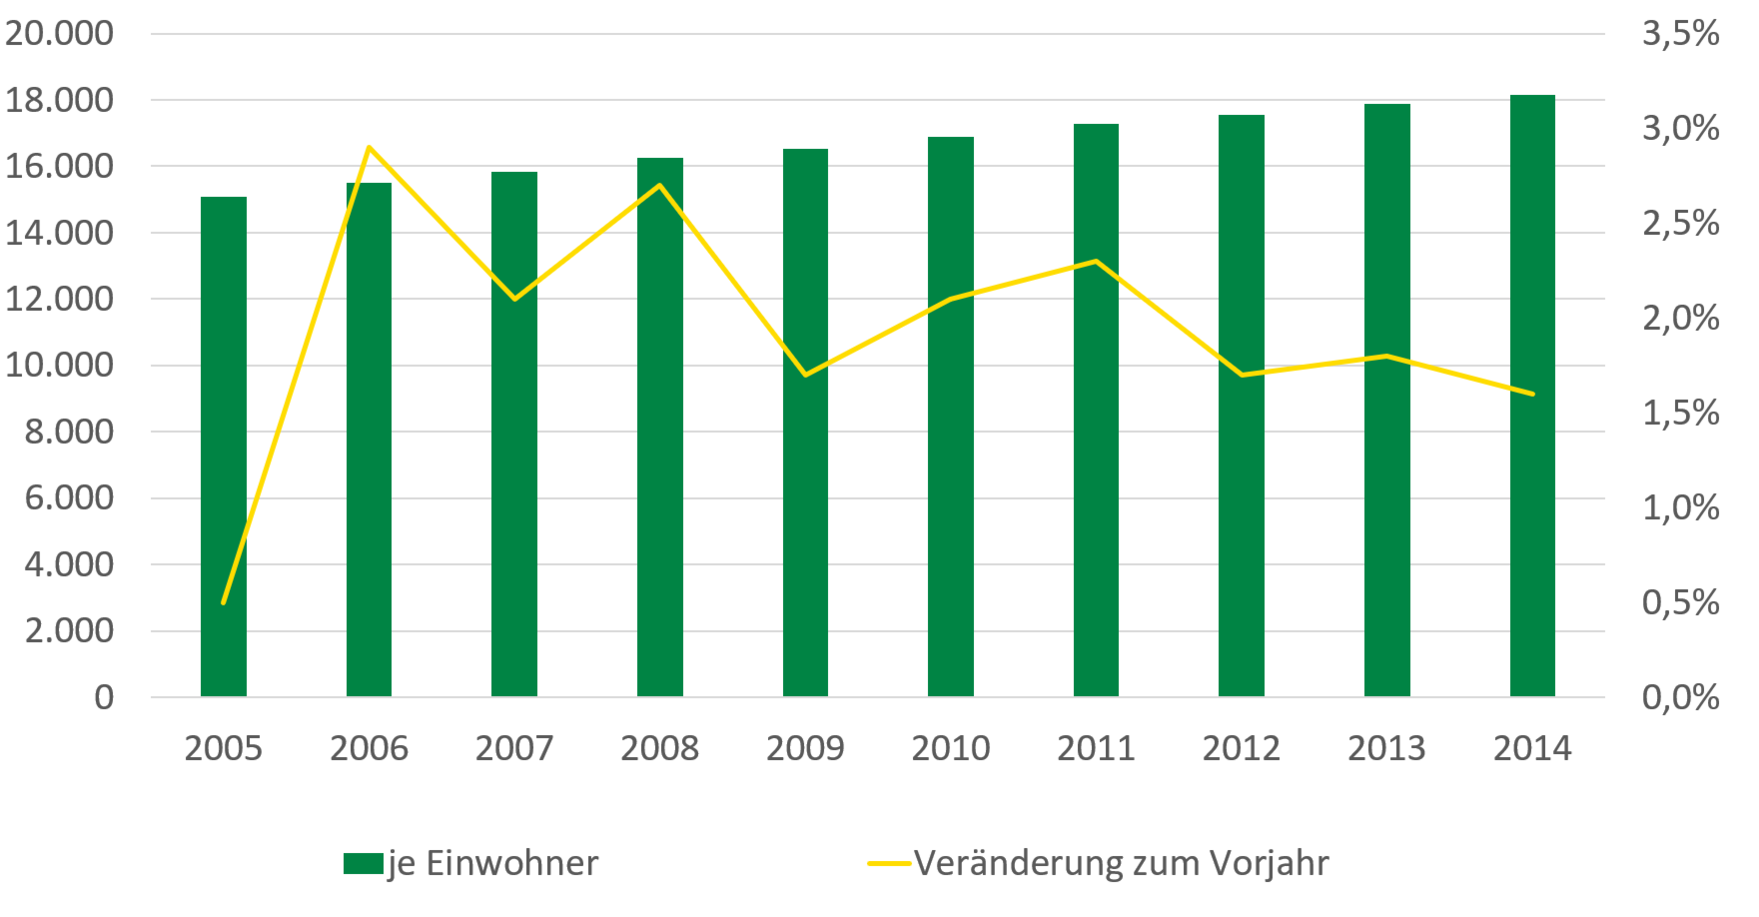 Das verfügbare Einkommen je Einwohner stieg in Sachsen von 15.000 in 2005 auf 18.000 in 2014. Die Wachstumsrate des verfügbaren Einkommens lag in den Jahren 2012 bis 2014 eher unter 2 Prozent pro Jahr, davor häufig über 2 Prozent pro Jahr.